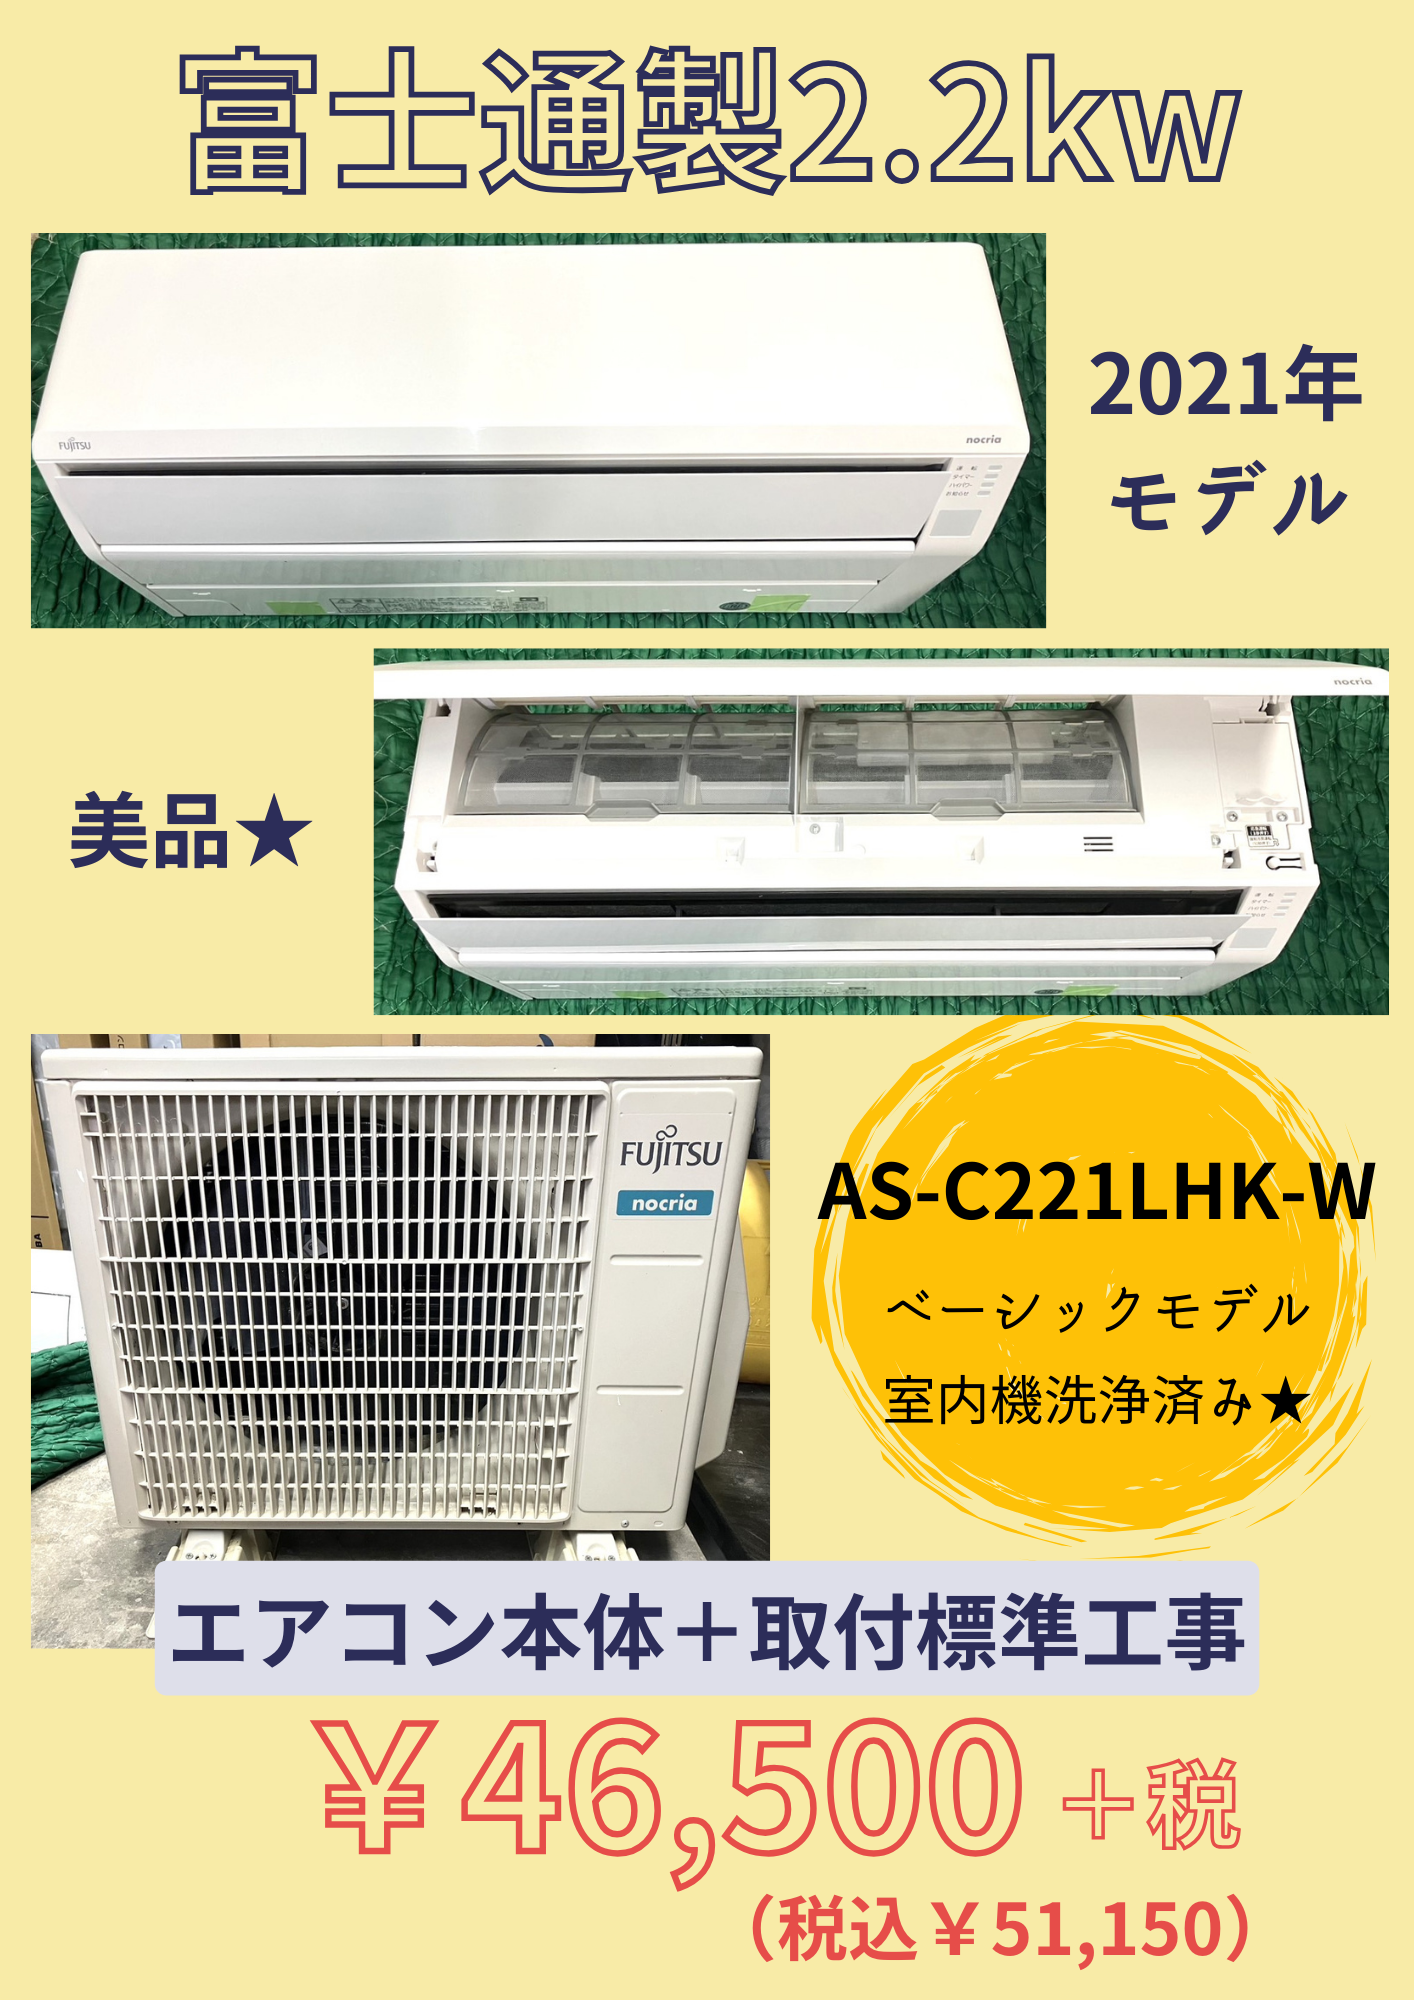 富士通エアコン2018年洗浄済み - 季節、空調家電